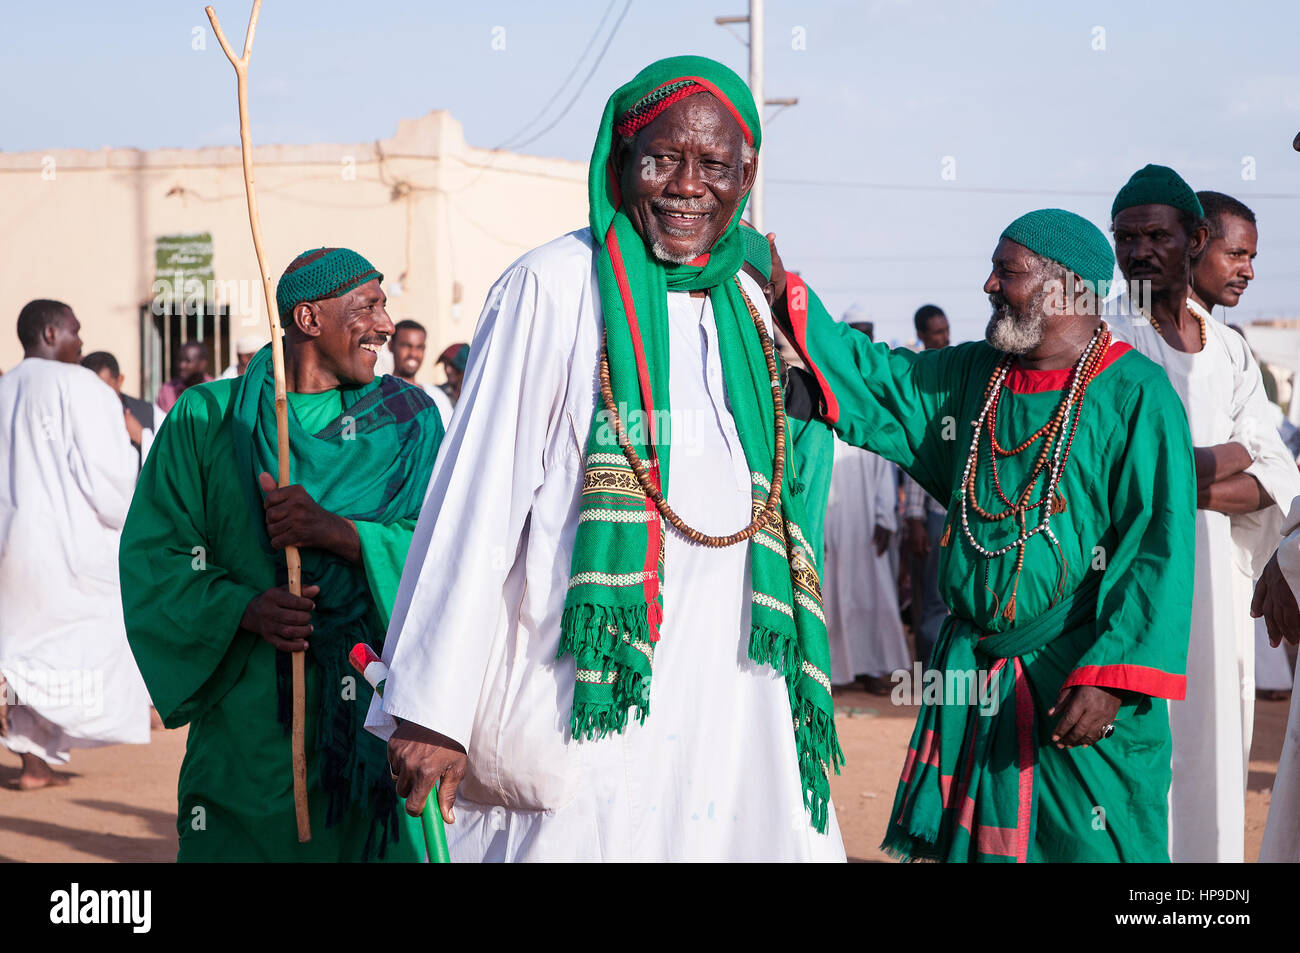 SUDAN, OMDURMAN: Jeden Freitag die Sufis von Omdurman, die andere Hälfte des nördlichen Sudan Hauptstadt Khartum, sammeln für ihre "Dhikr" - singen und tanzen Stockfoto